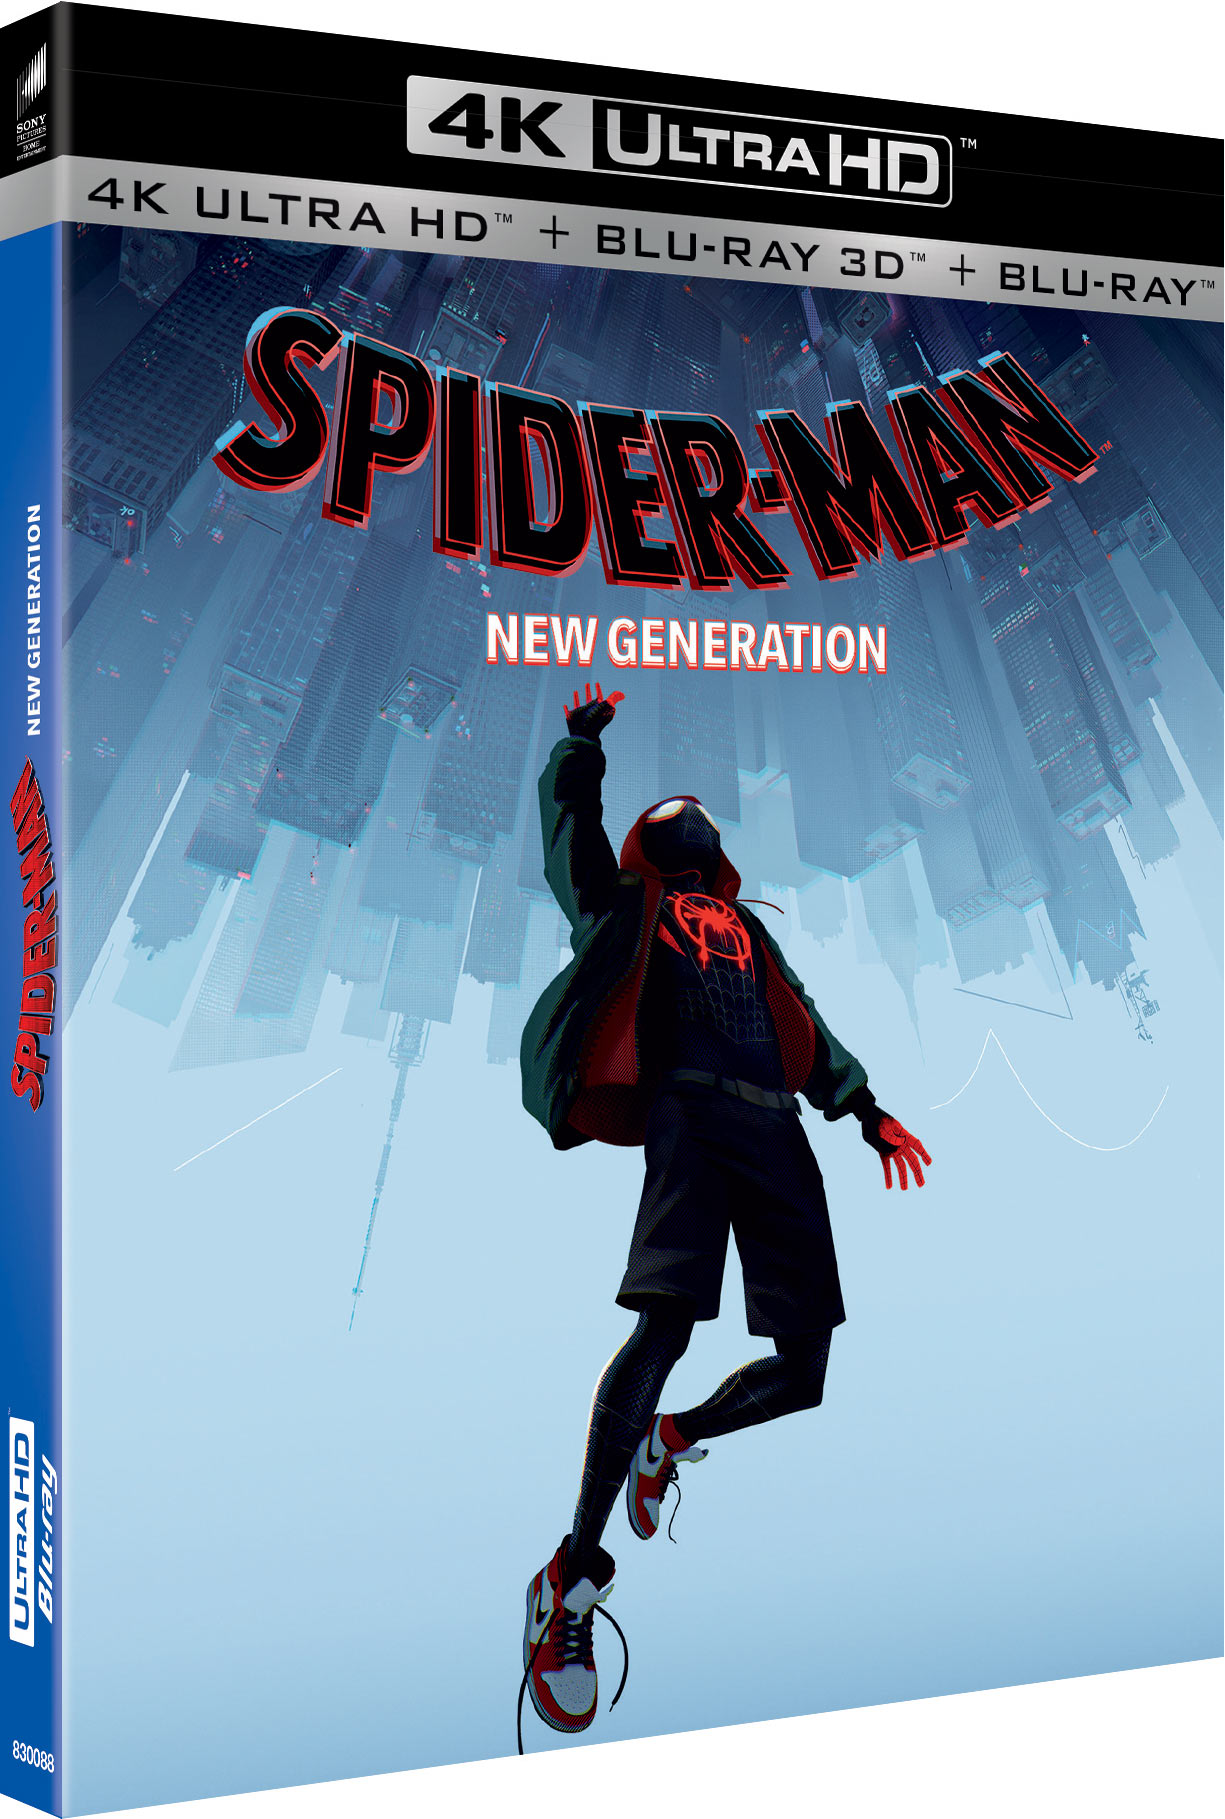 Spider-Man : New Generation - 4K Ultra HD + Blu-ray 3D + Blu-ray